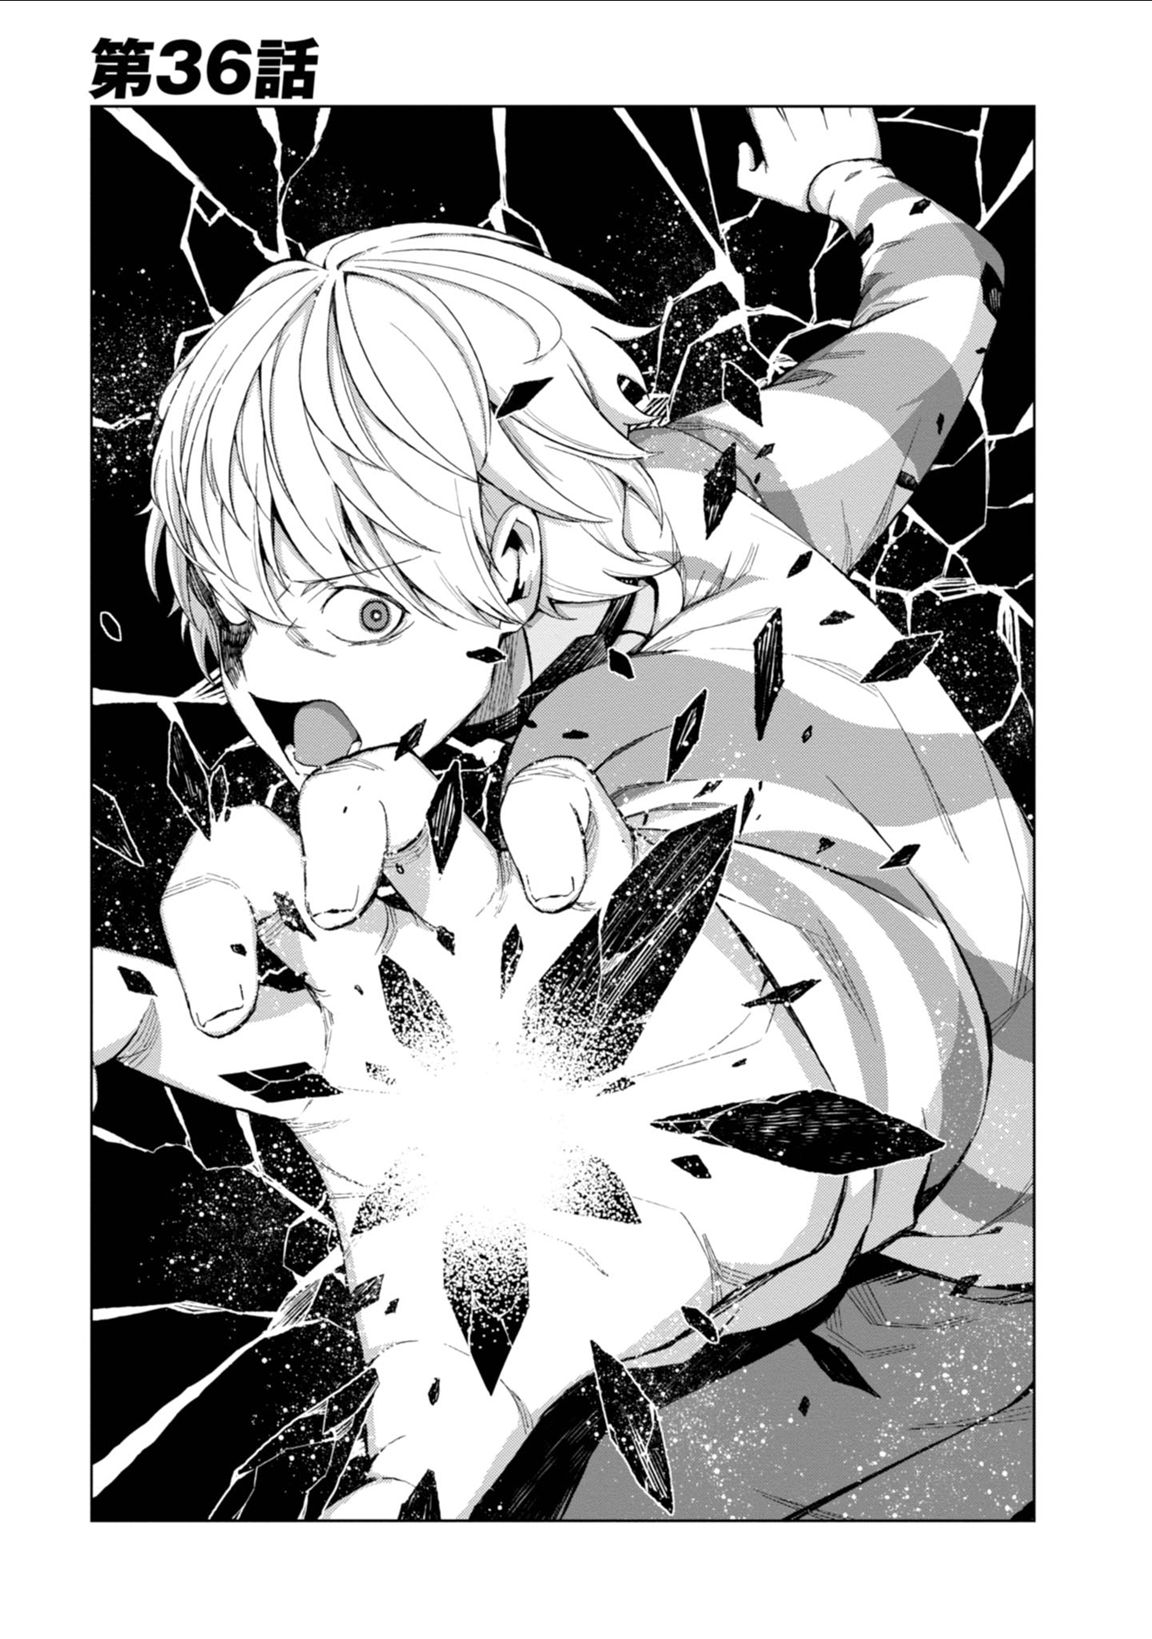 Toaru Kagaku no Accelerator Manga Volume 09, Toaru Majutsu no Index Wiki